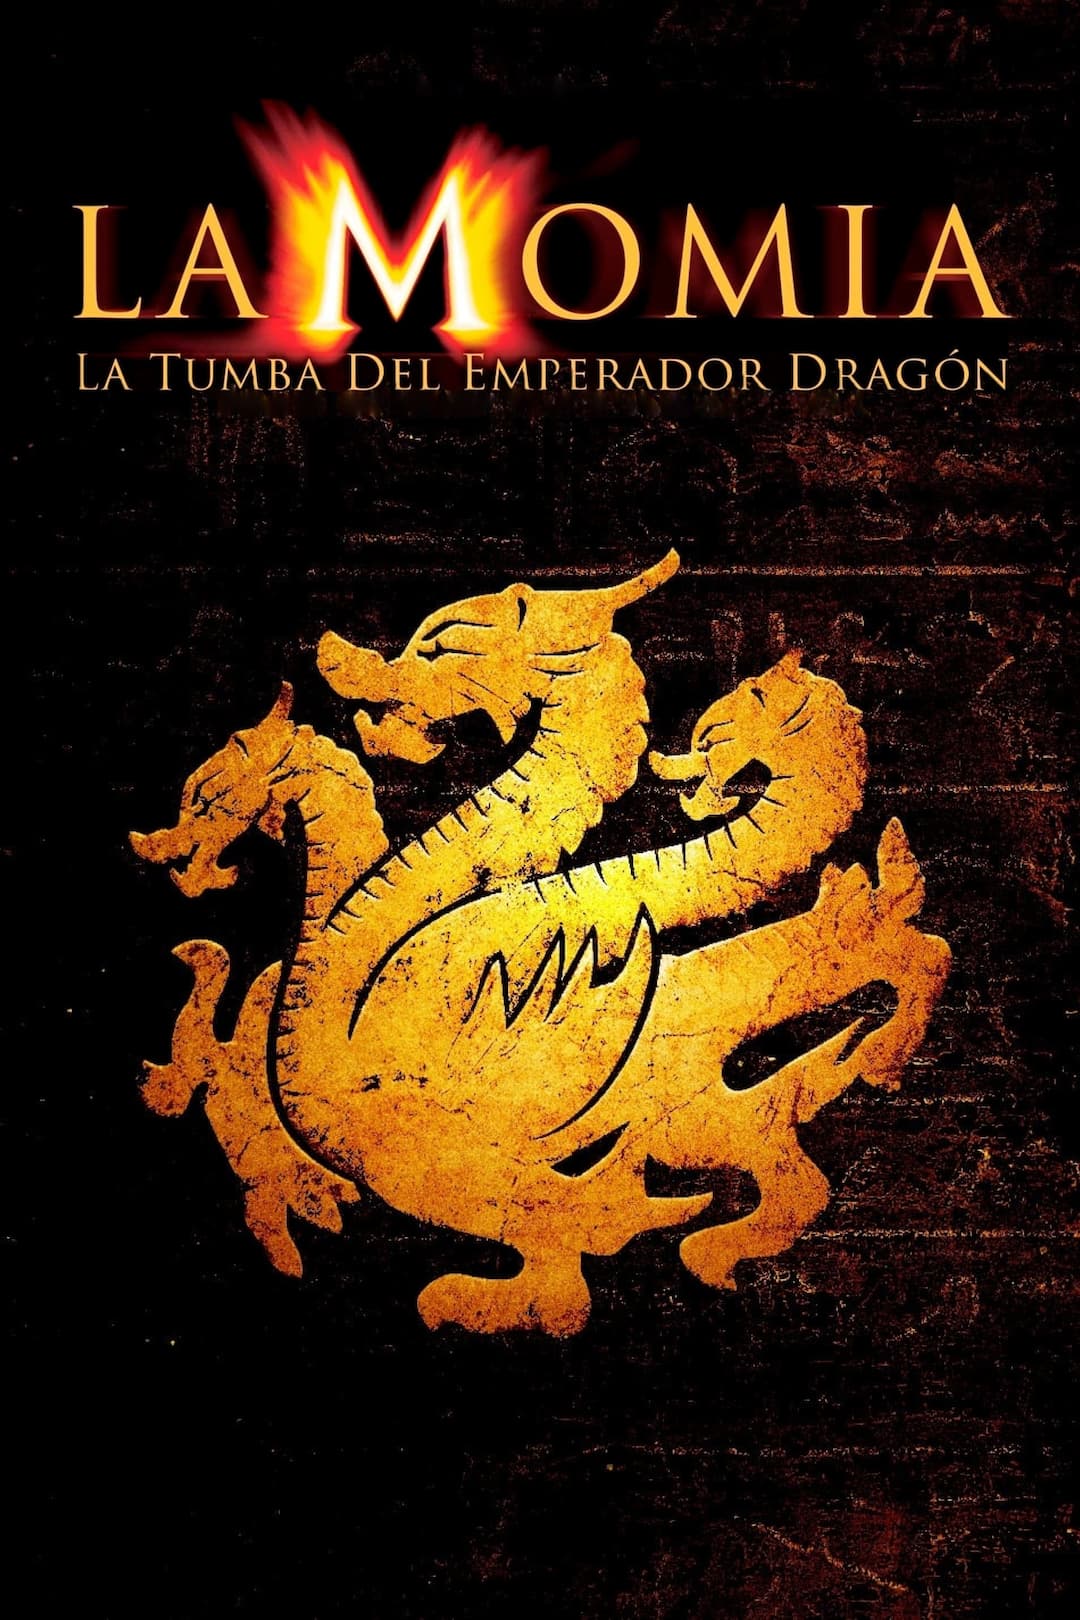 La momia: La tumba del emperador dragón